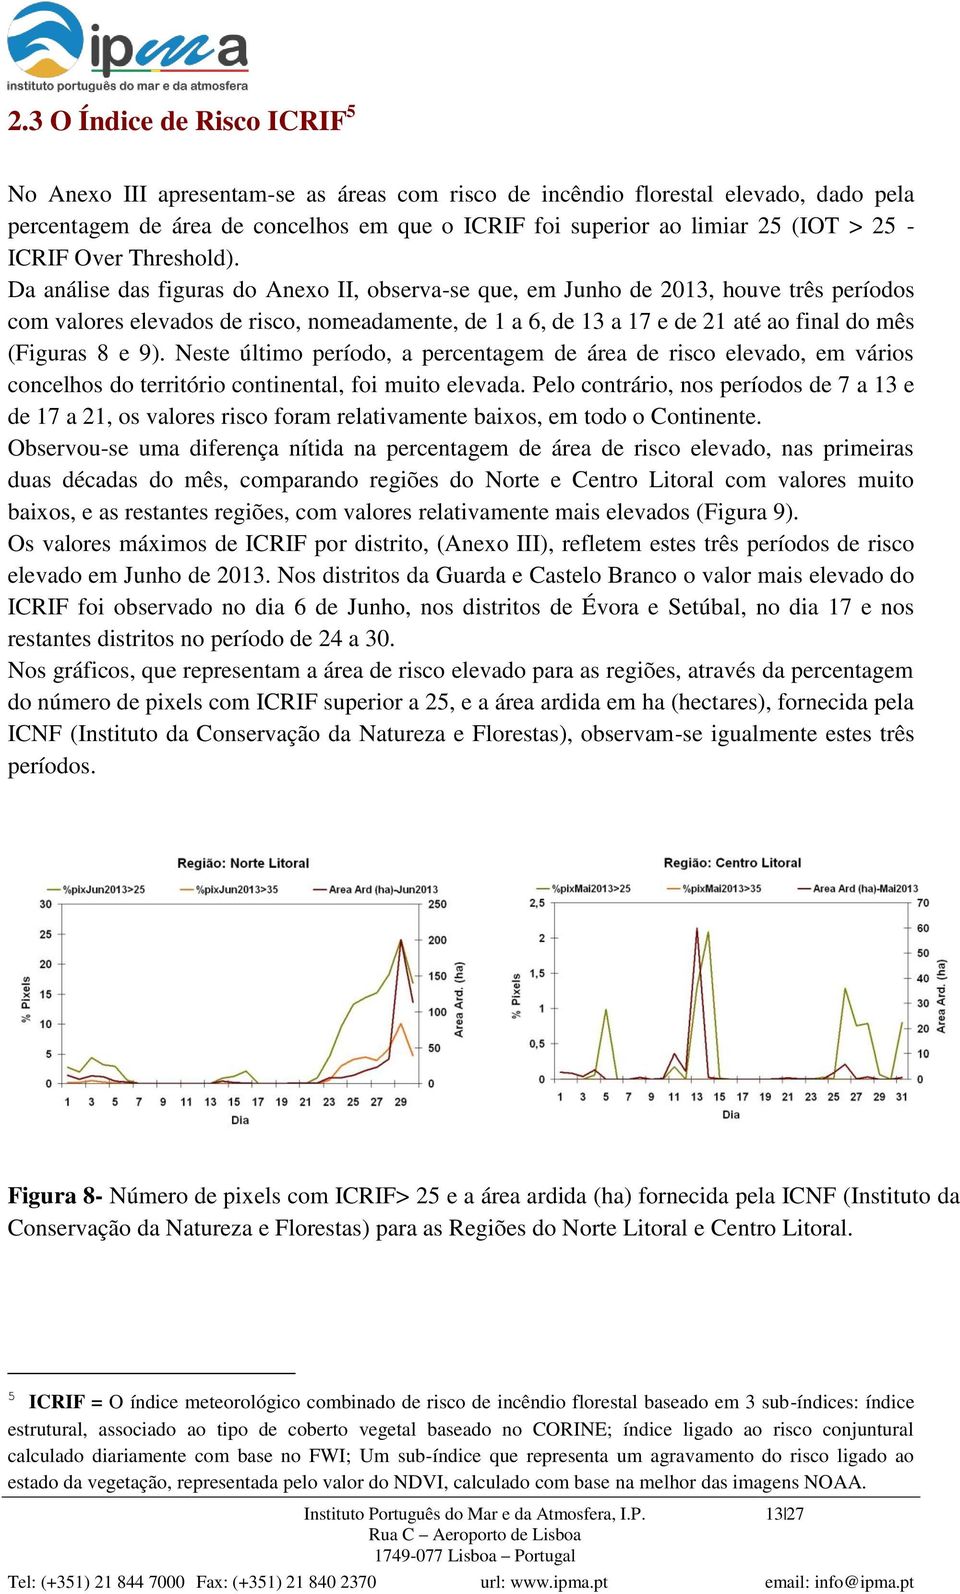 Da análise das figuras do Anexo II, observa-se que, em Junho de 2013, houve três períodos com valores elevados de risco, nomeadamente, de 1 a 6, de 13 a 17 e de 21 até ao final do mês (Figuras 8 e 9).